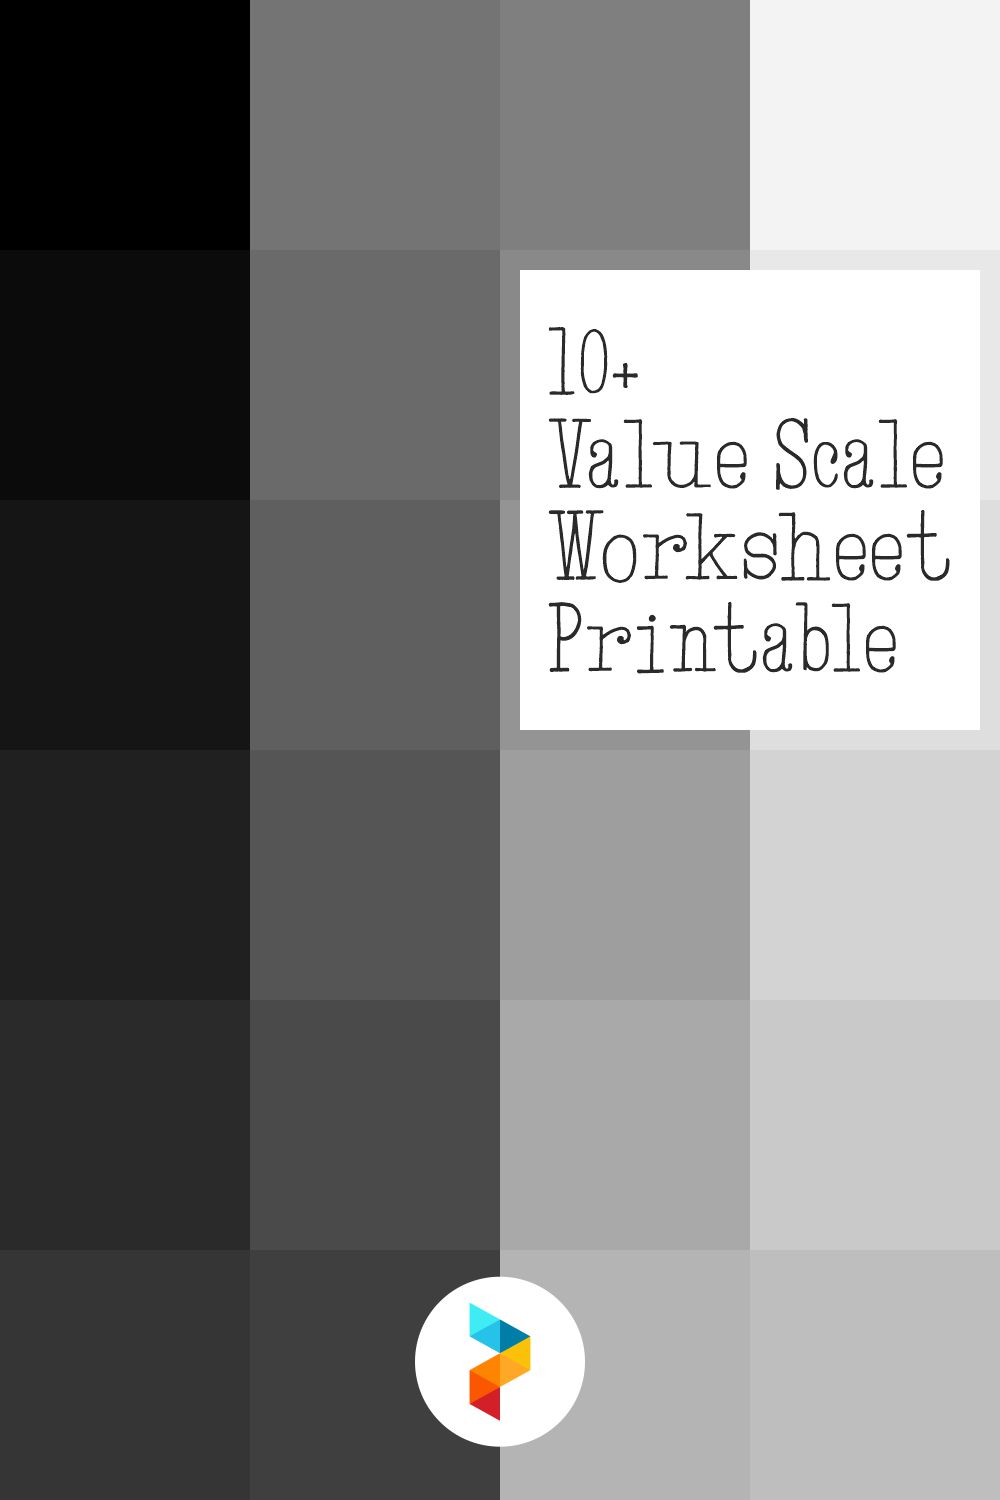 Value Scale Worksheet Printable